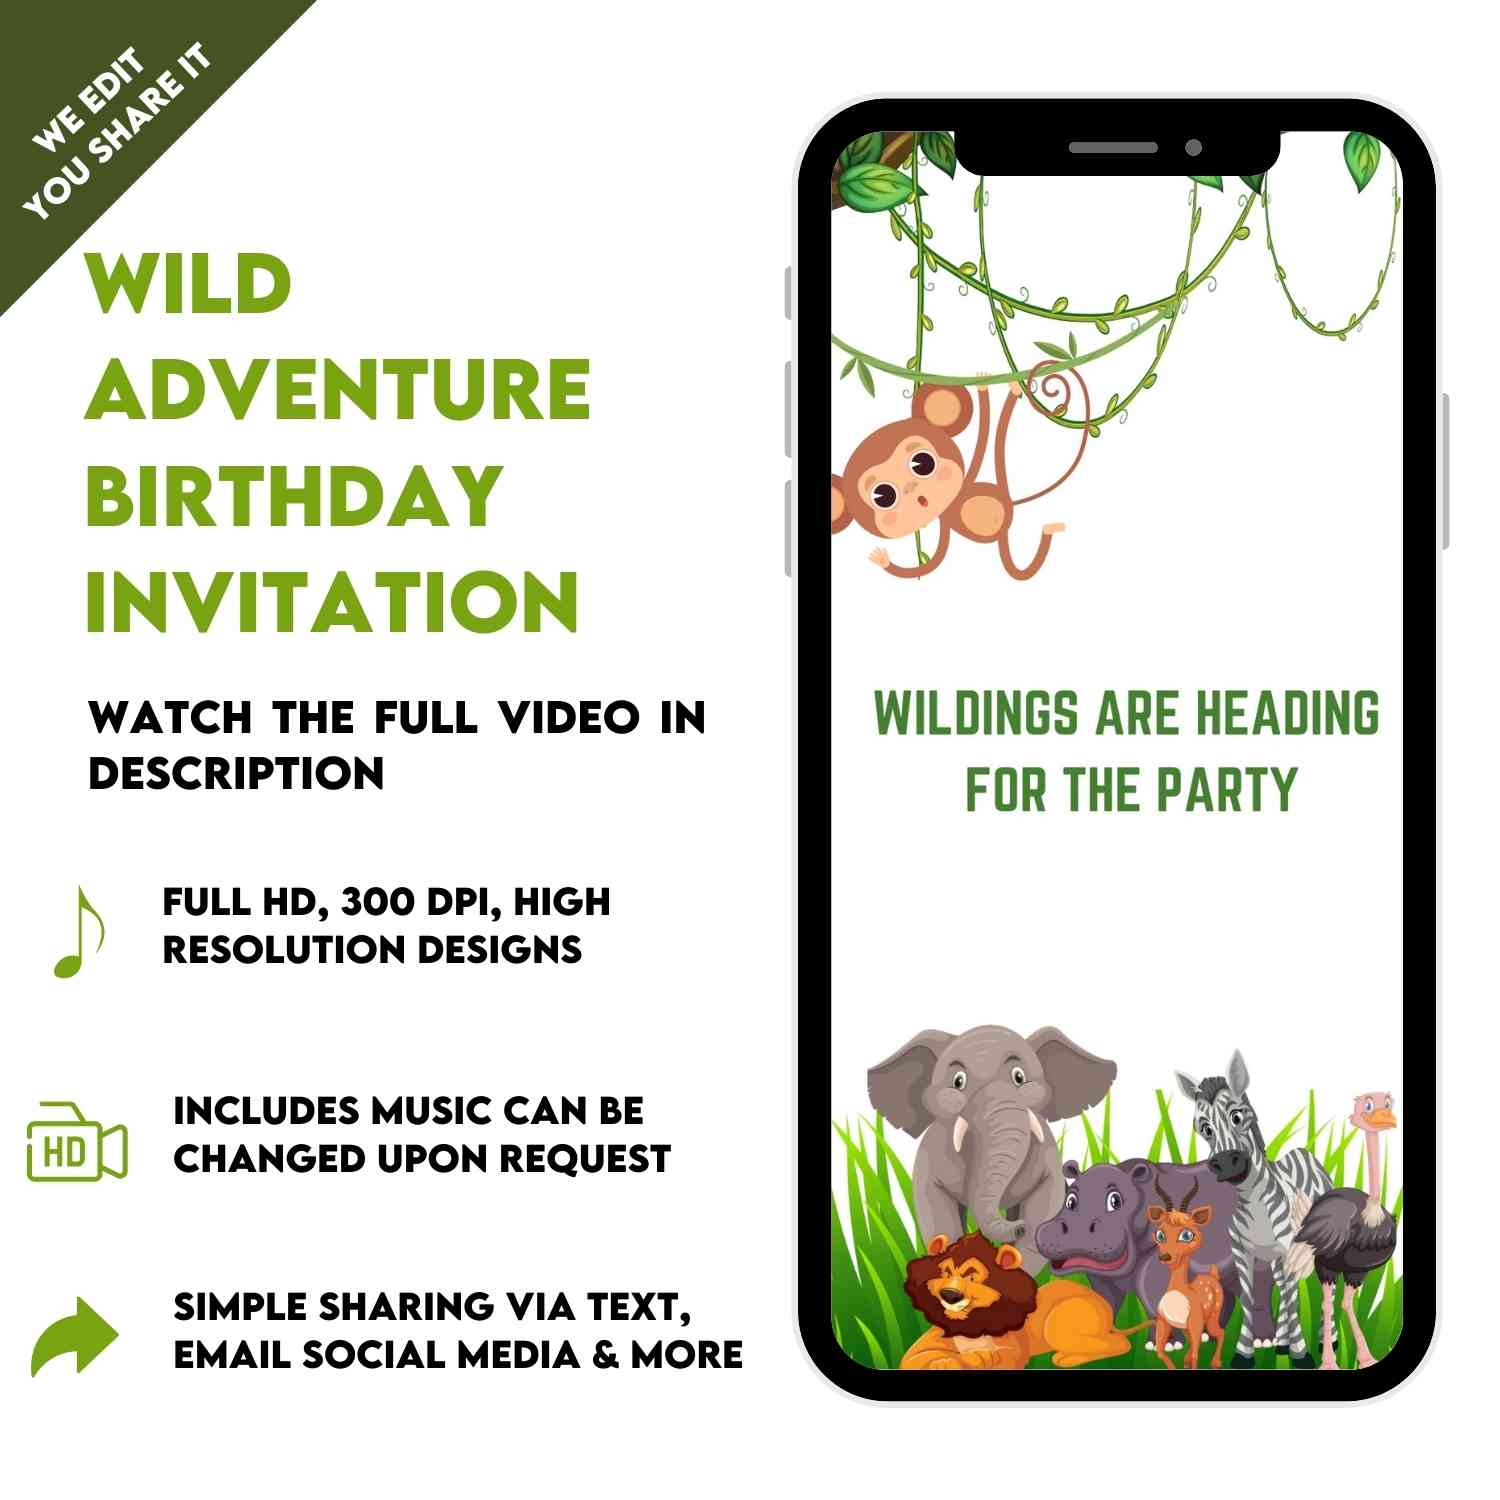 Wild Adventure Birthday: Jungle Safari Video Invitation